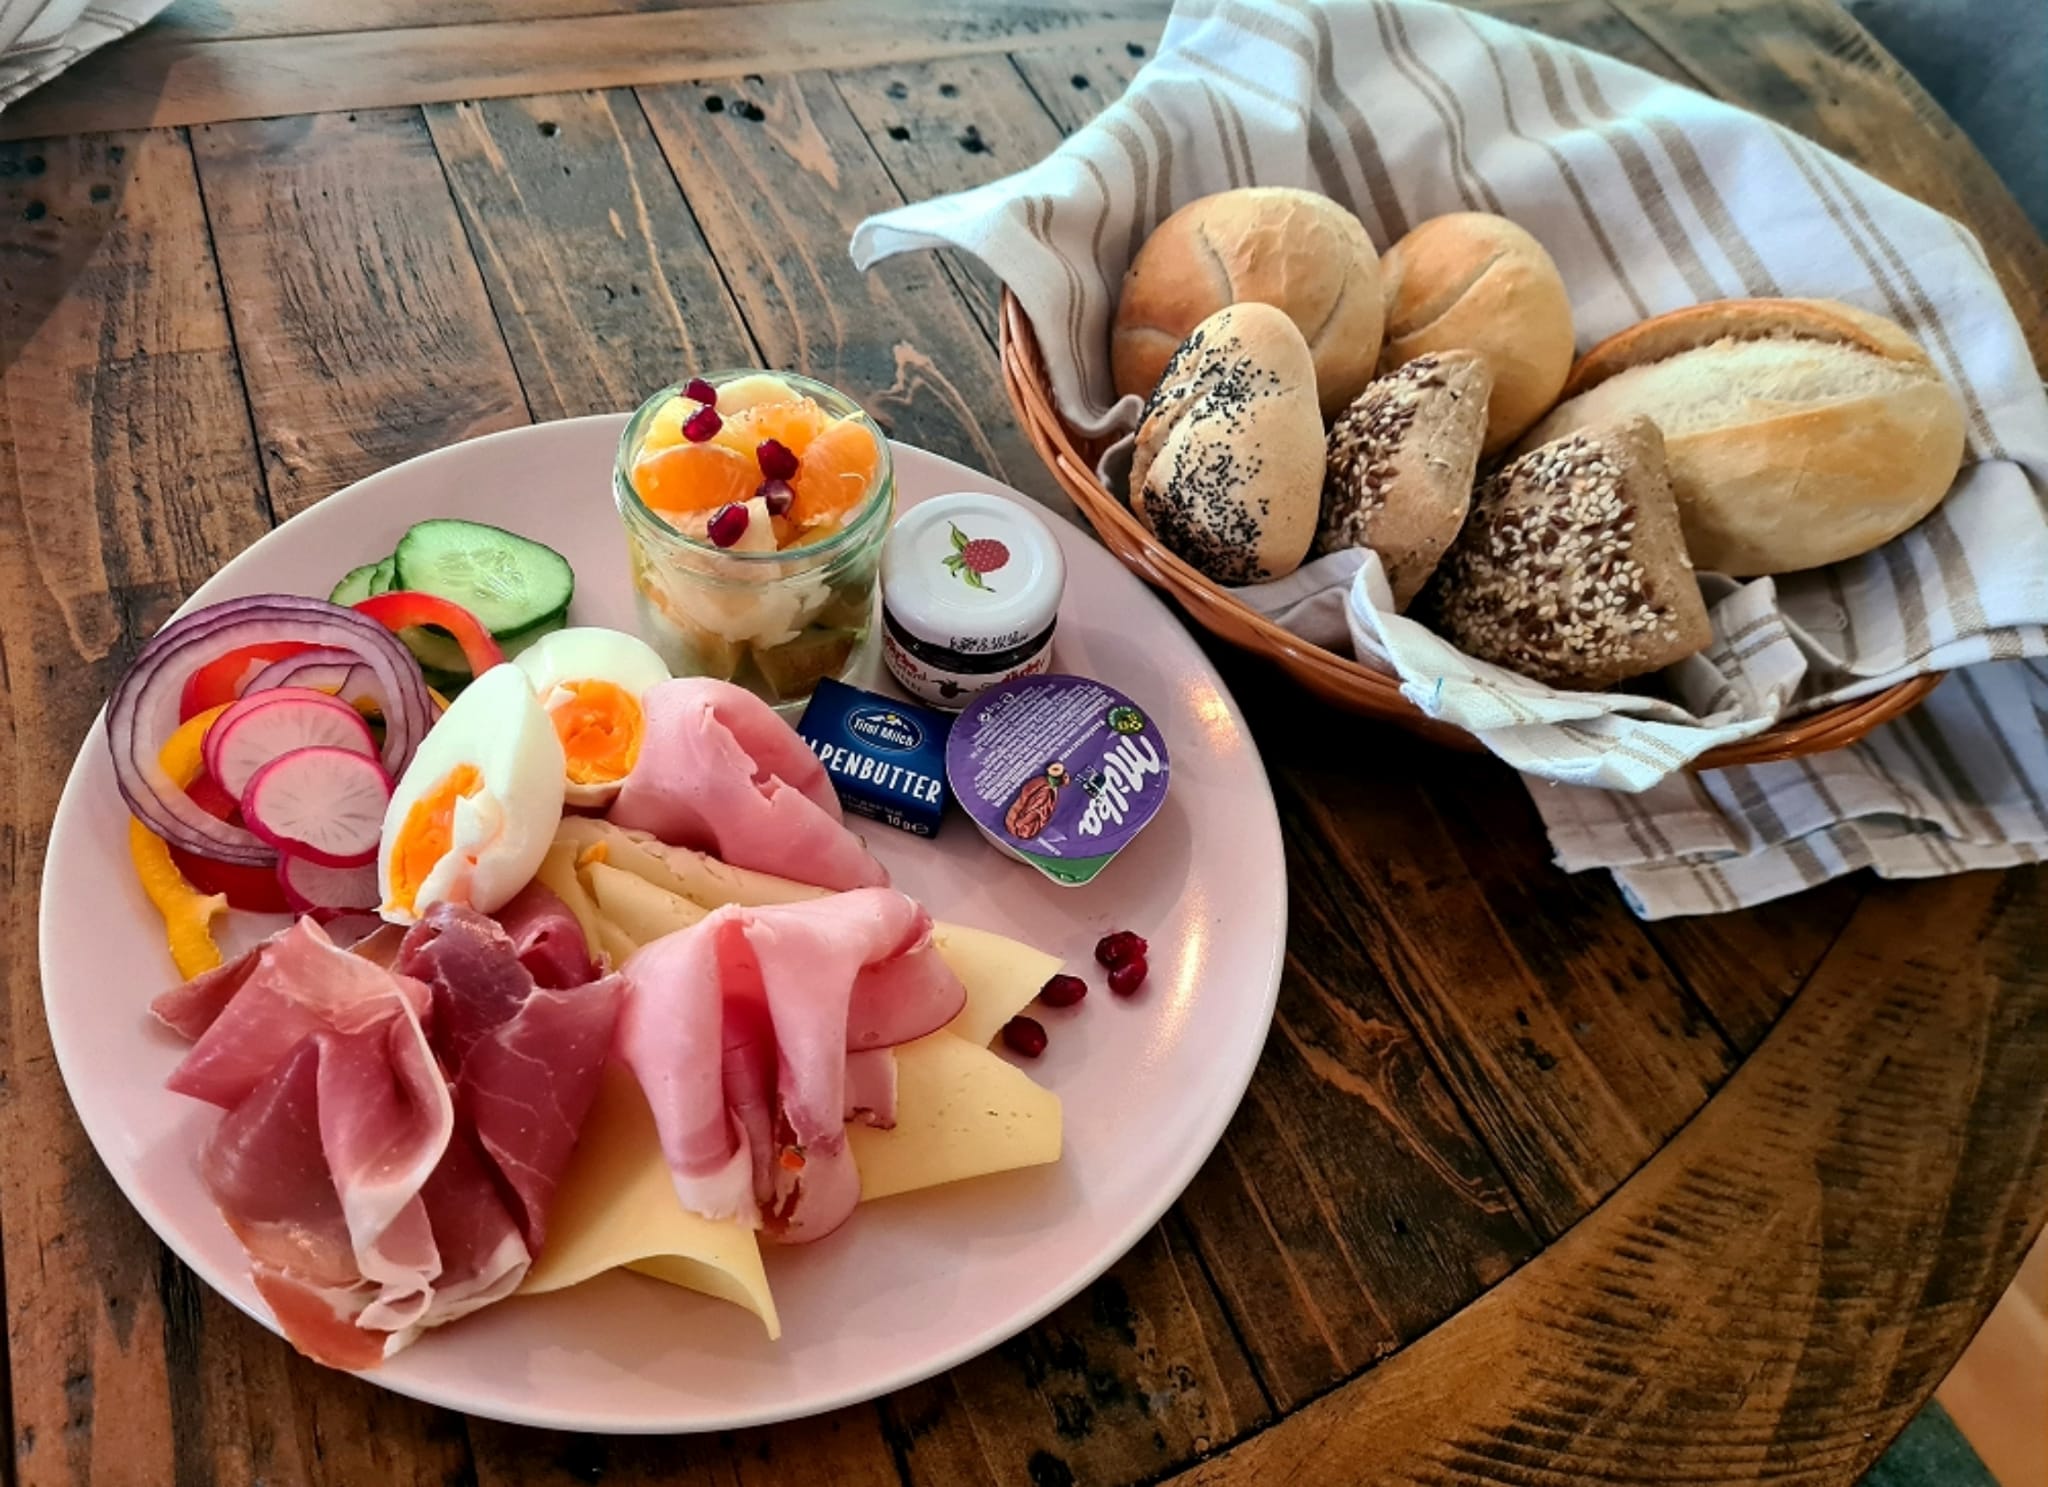 Bilder Sofa Cafe – Frühstück | Brunch | Lunch - Region Ehrwald | Lermoos | Bieberwier | Lähn | Bichlbach